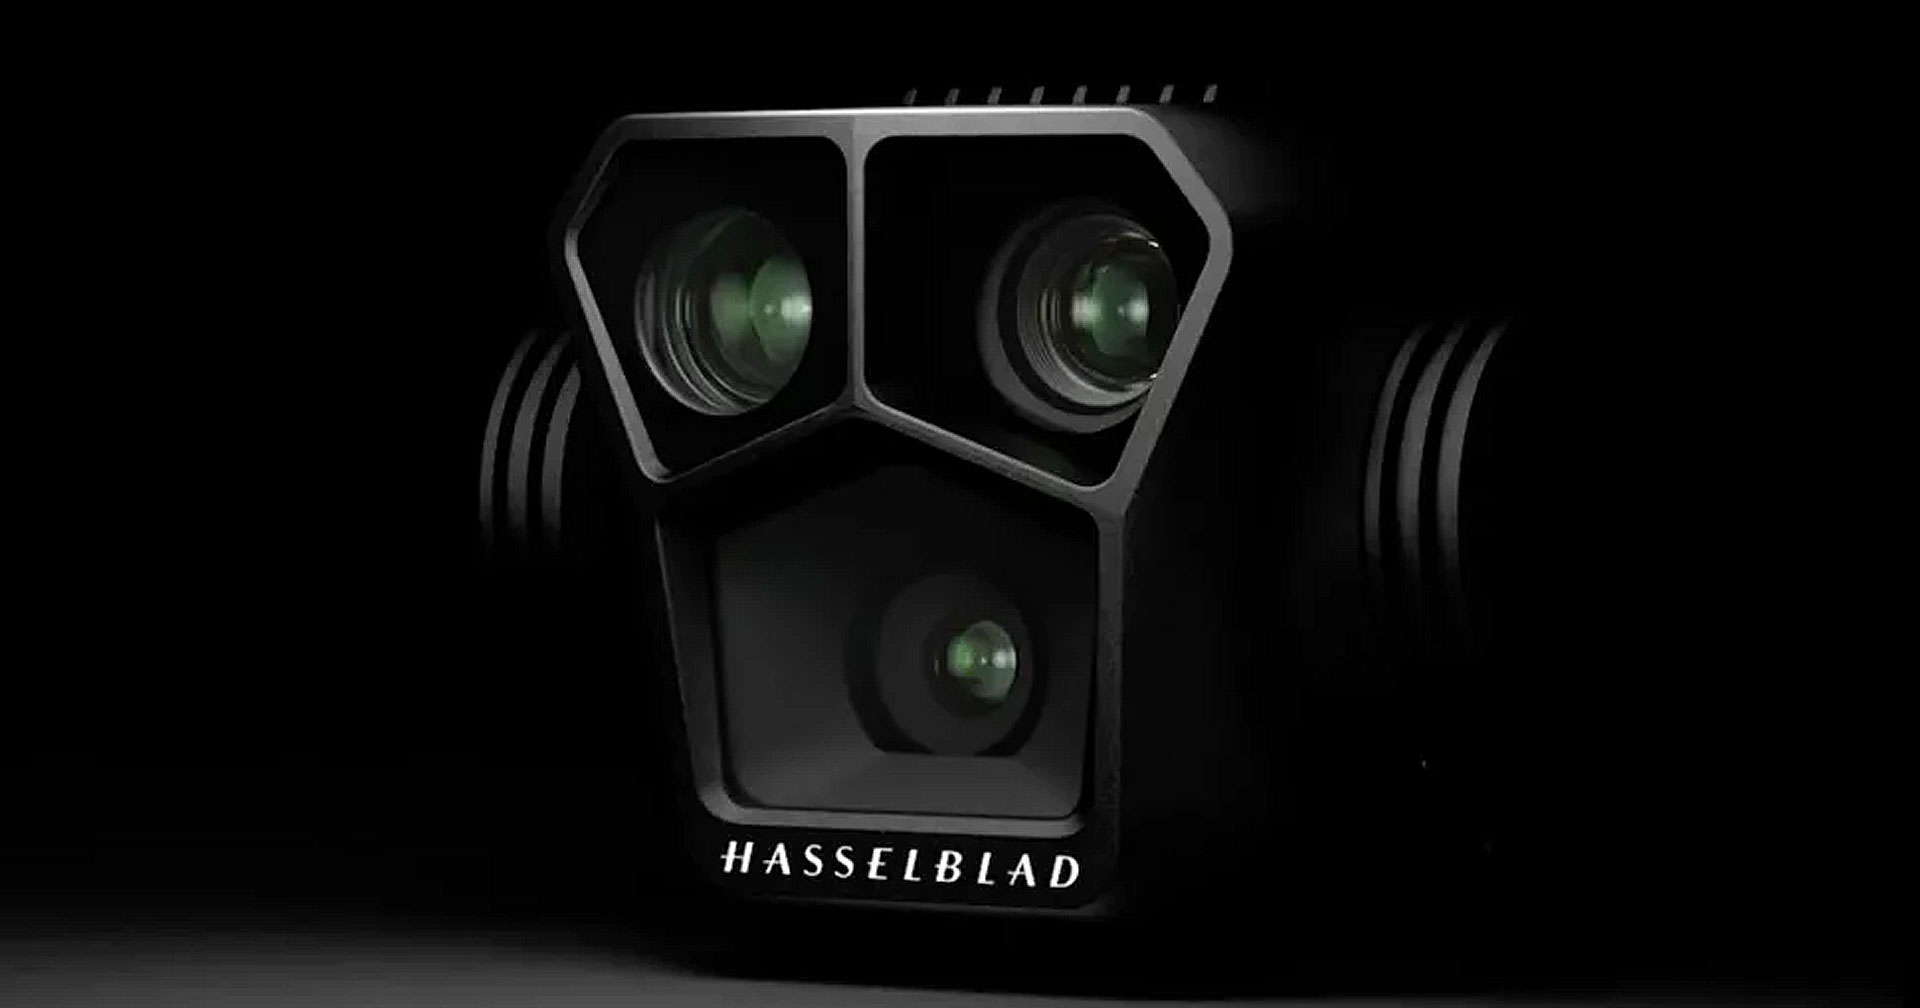 DJI เตรียมเปิดของใหม่คืนนี้! คาดคือโดรนตัวเทพ ‘DJI Mavic 3 Pro’ ที่มาพร้อมกล้อง Hasselblad ถึง 3 ตัว